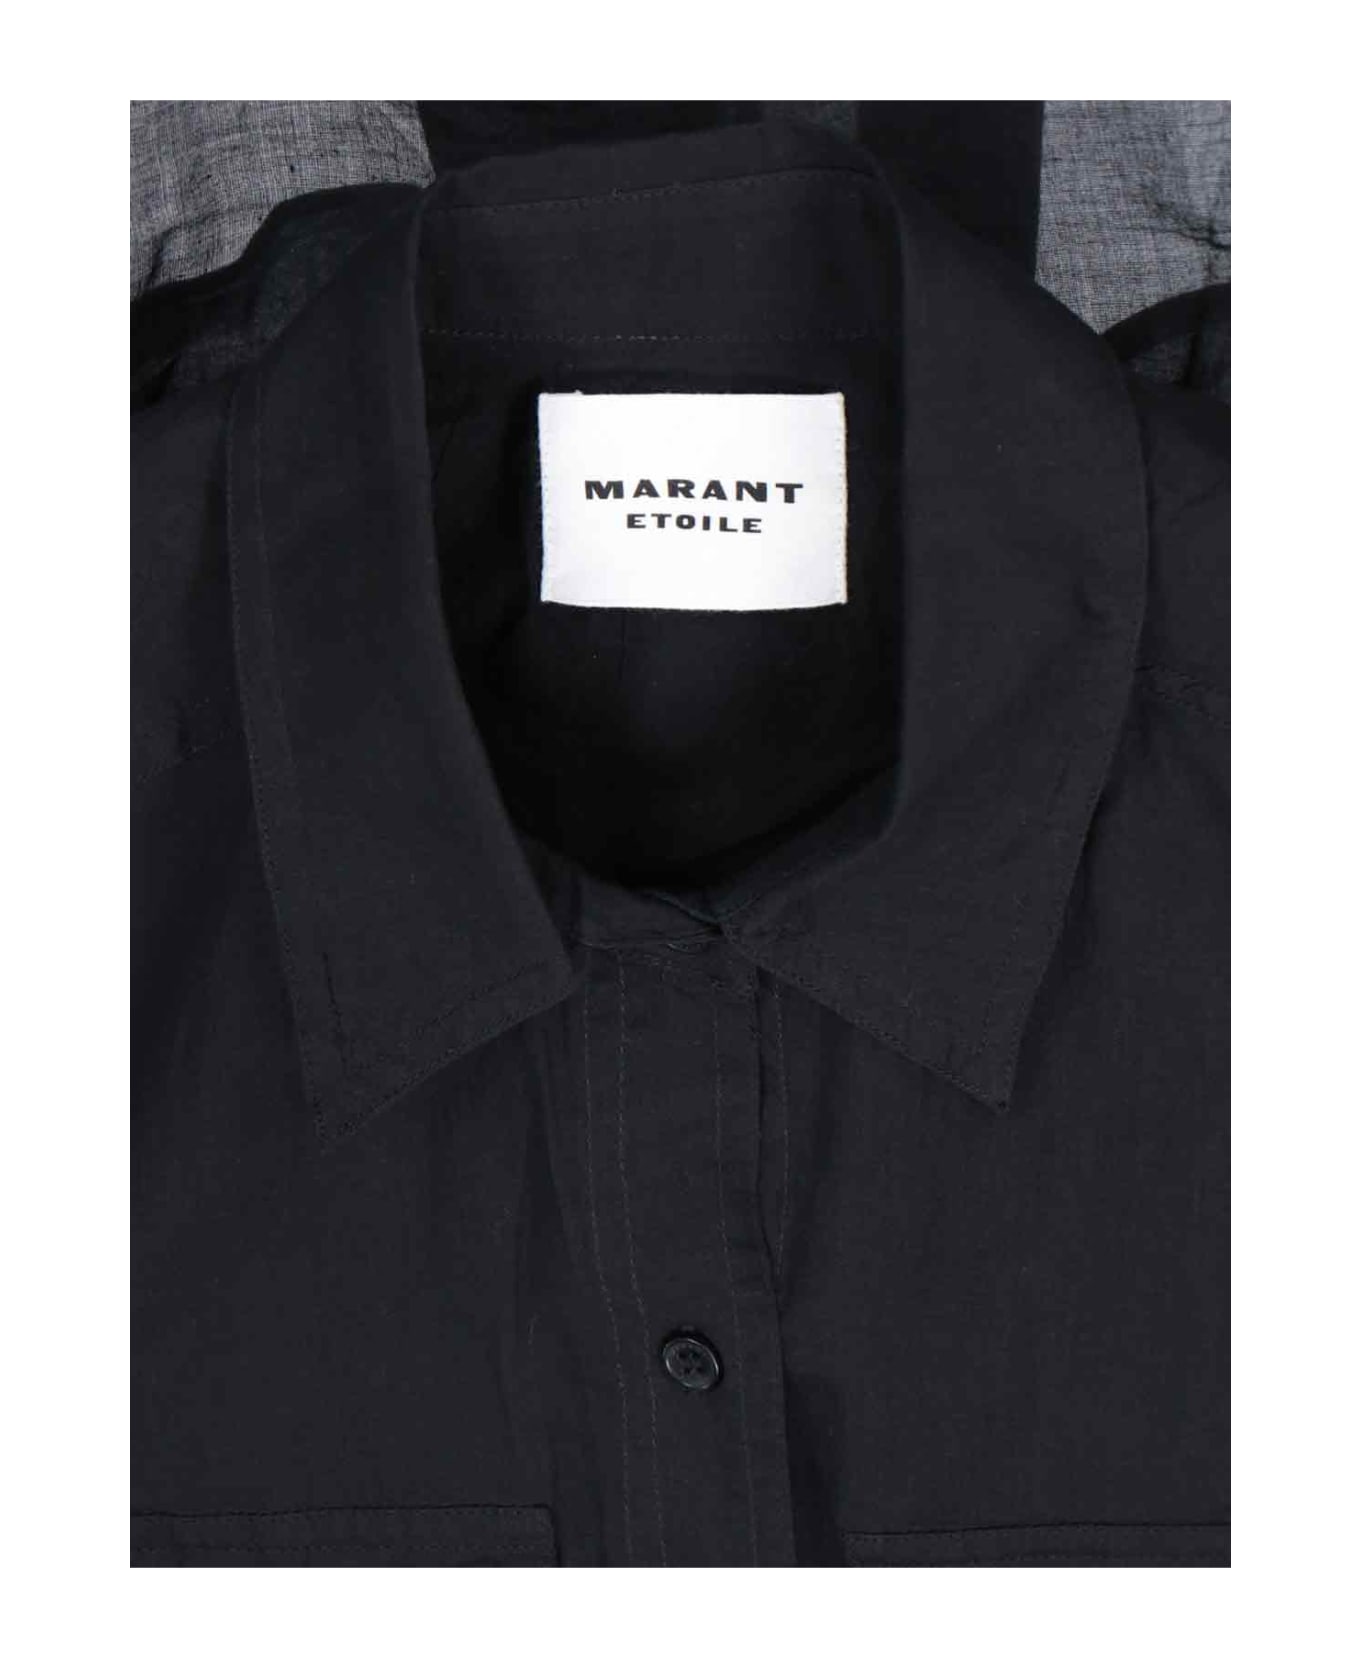 Marant Étoile Shirt - Black